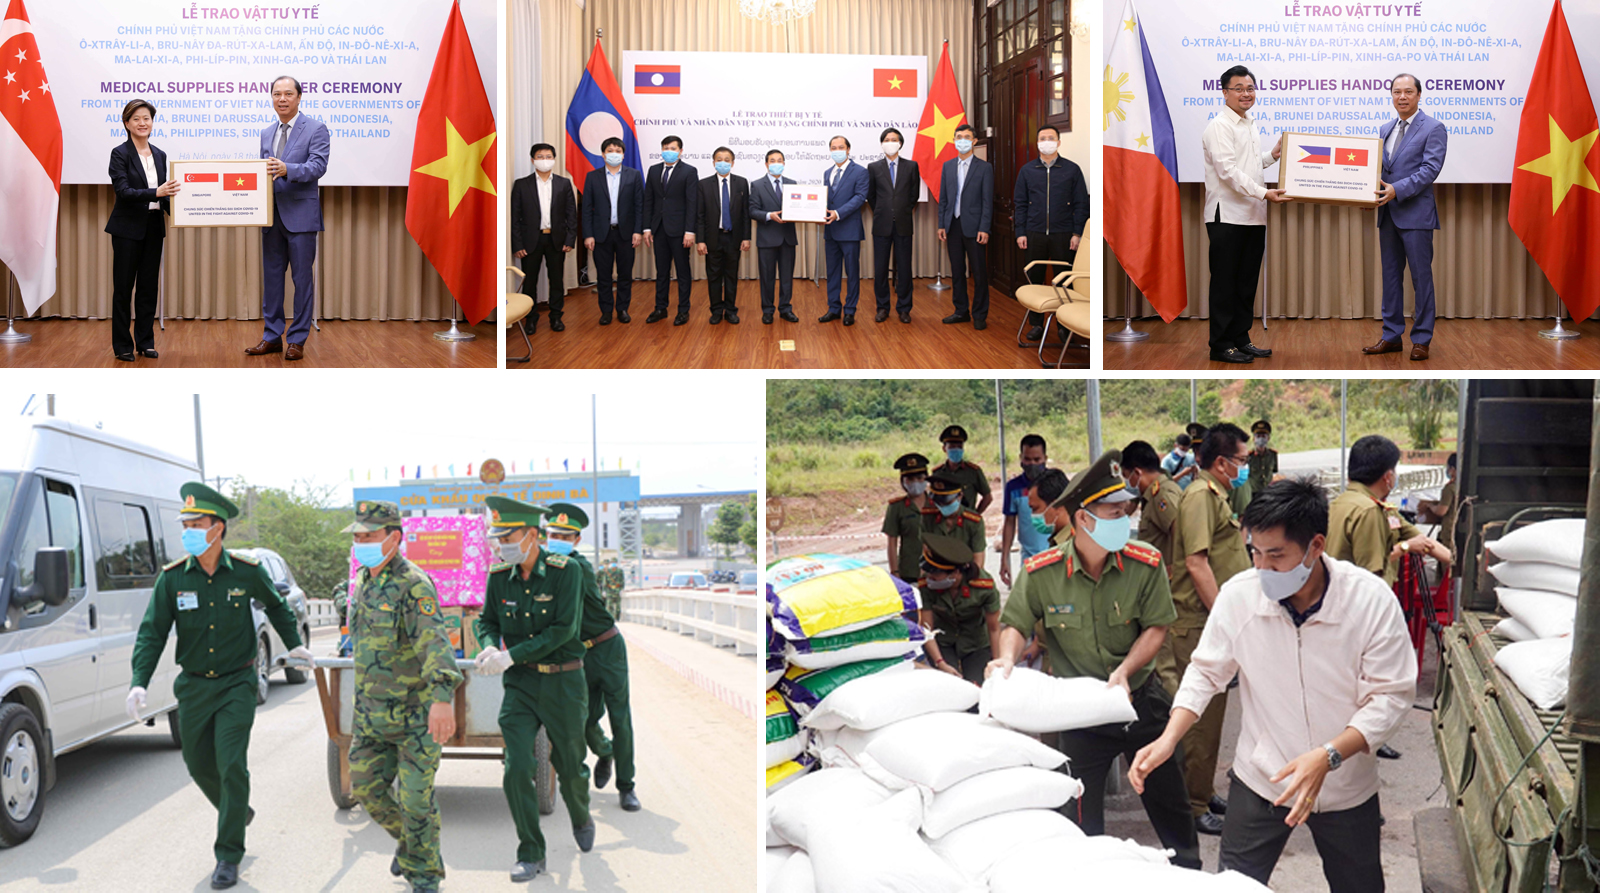 Với việc đảm nhận vai trò Chủ tịch ASEAN, Việt Nam đã đưa ra nhiều kế hoạch và chủ đề quan trọng để thúc đẩy sự hợp tác và phát triển khu vực. Hãy xem hình ảnh liên quan để tìm hiểu thêm về việc Việt Nam dẫn đầu khối ASEAN trong năm Chủ tịch.